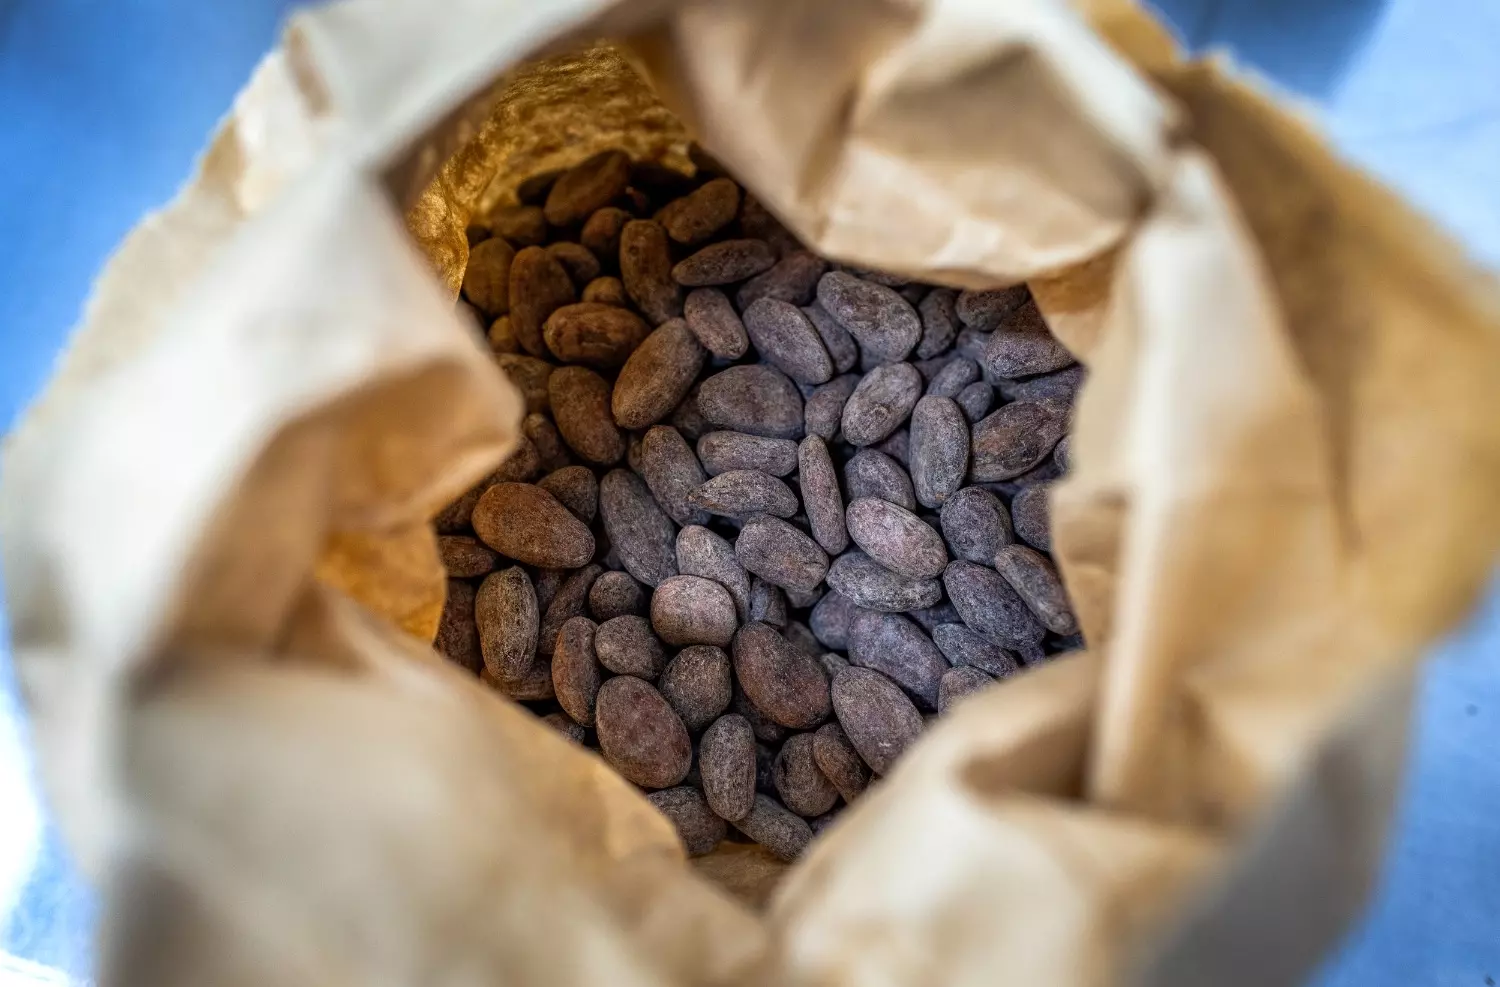 По словам эксперта, многие флавонолы разрушаются еще в процессе приготовления какао-порошка